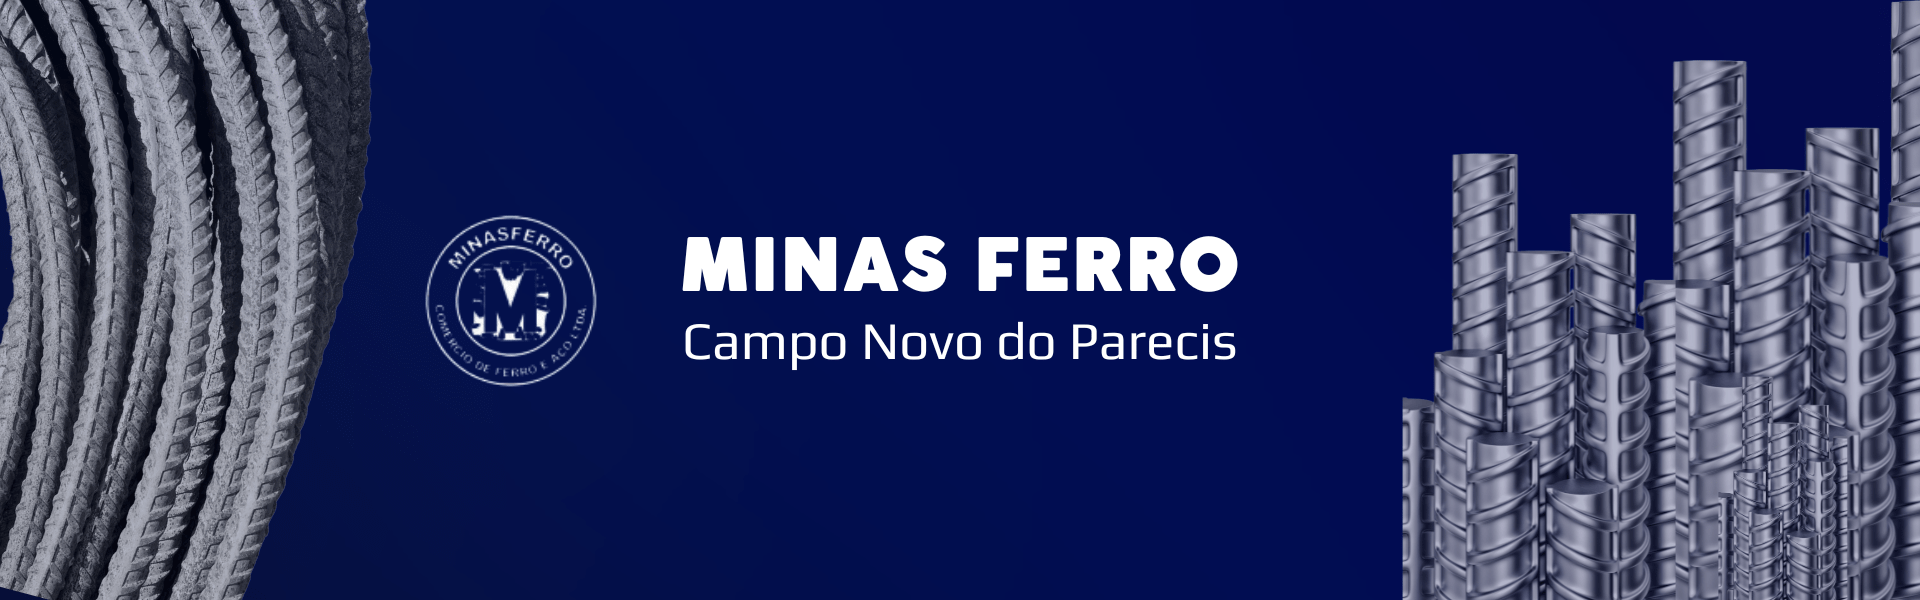 Minas Ferro Campo Novo do Parecis Mobile 2